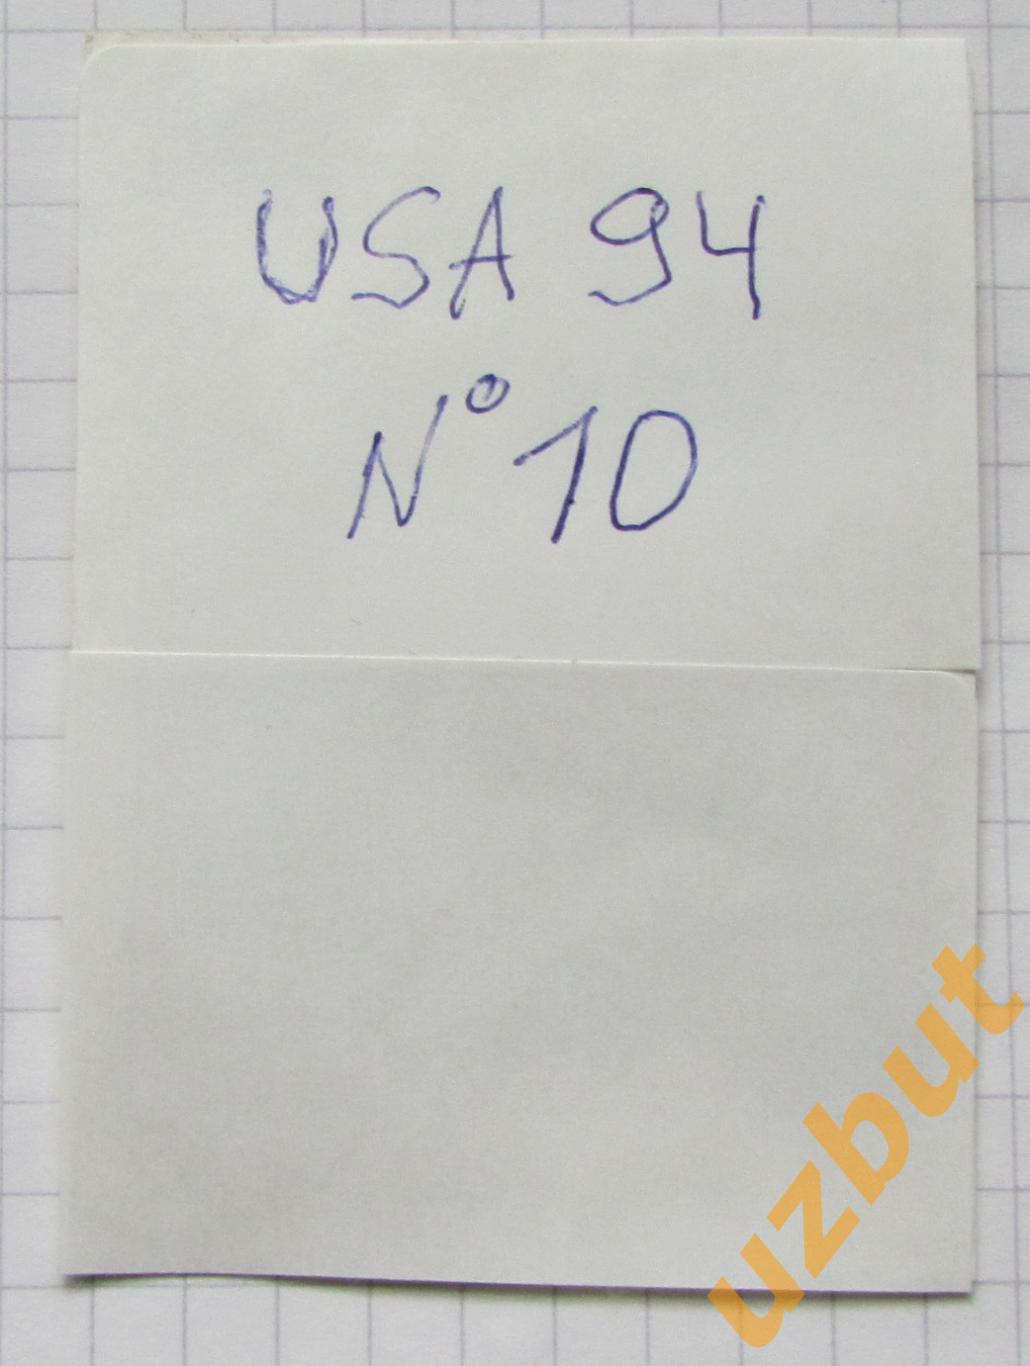 Наклейка Тони Меола США№ 10 Euroflash ЧМ 1994 США (восстановлена) 1